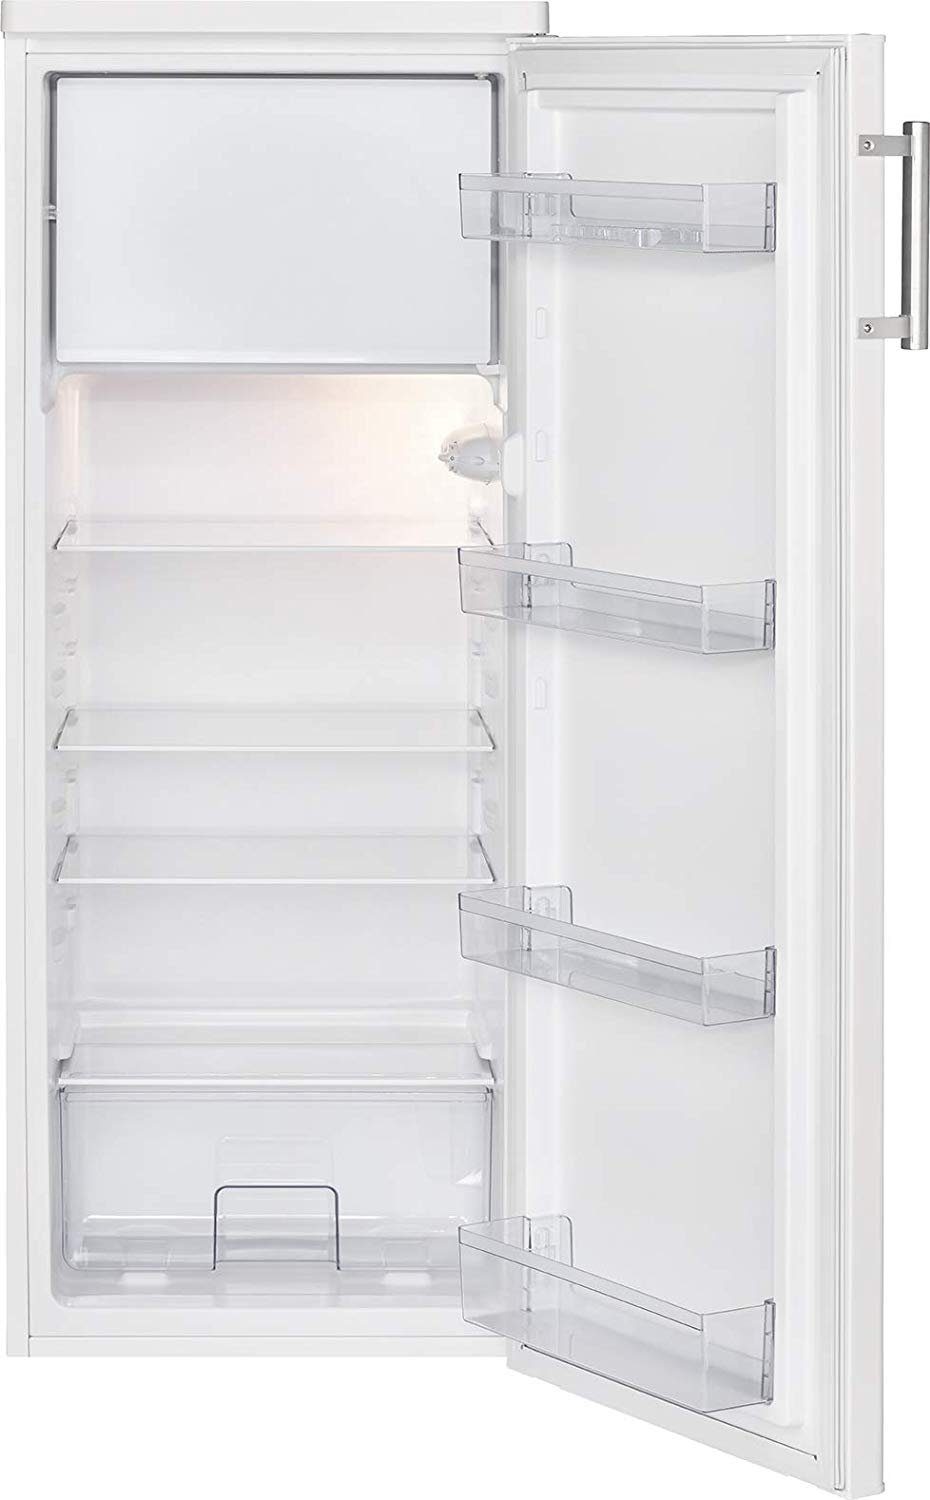 BOMANN Kühlschrank KS 7315.1, 143 cm hoch, 55 cm breit online kaufen | OTTO